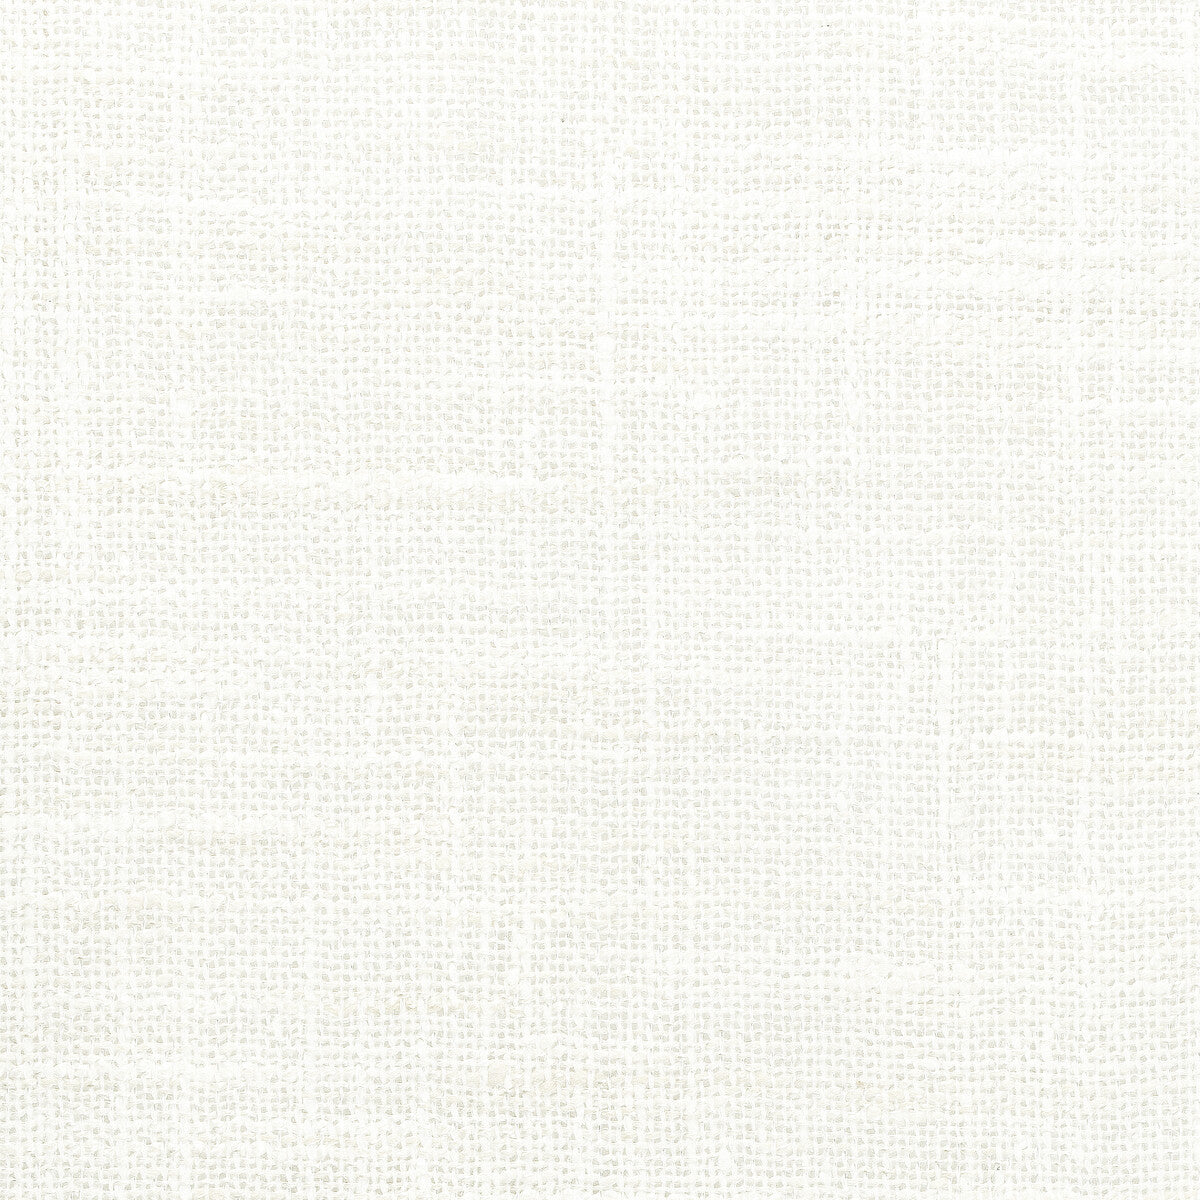 Kravet Basics fabric in 4853-101 color - pattern 4853.101.0 - by Kravet Basics